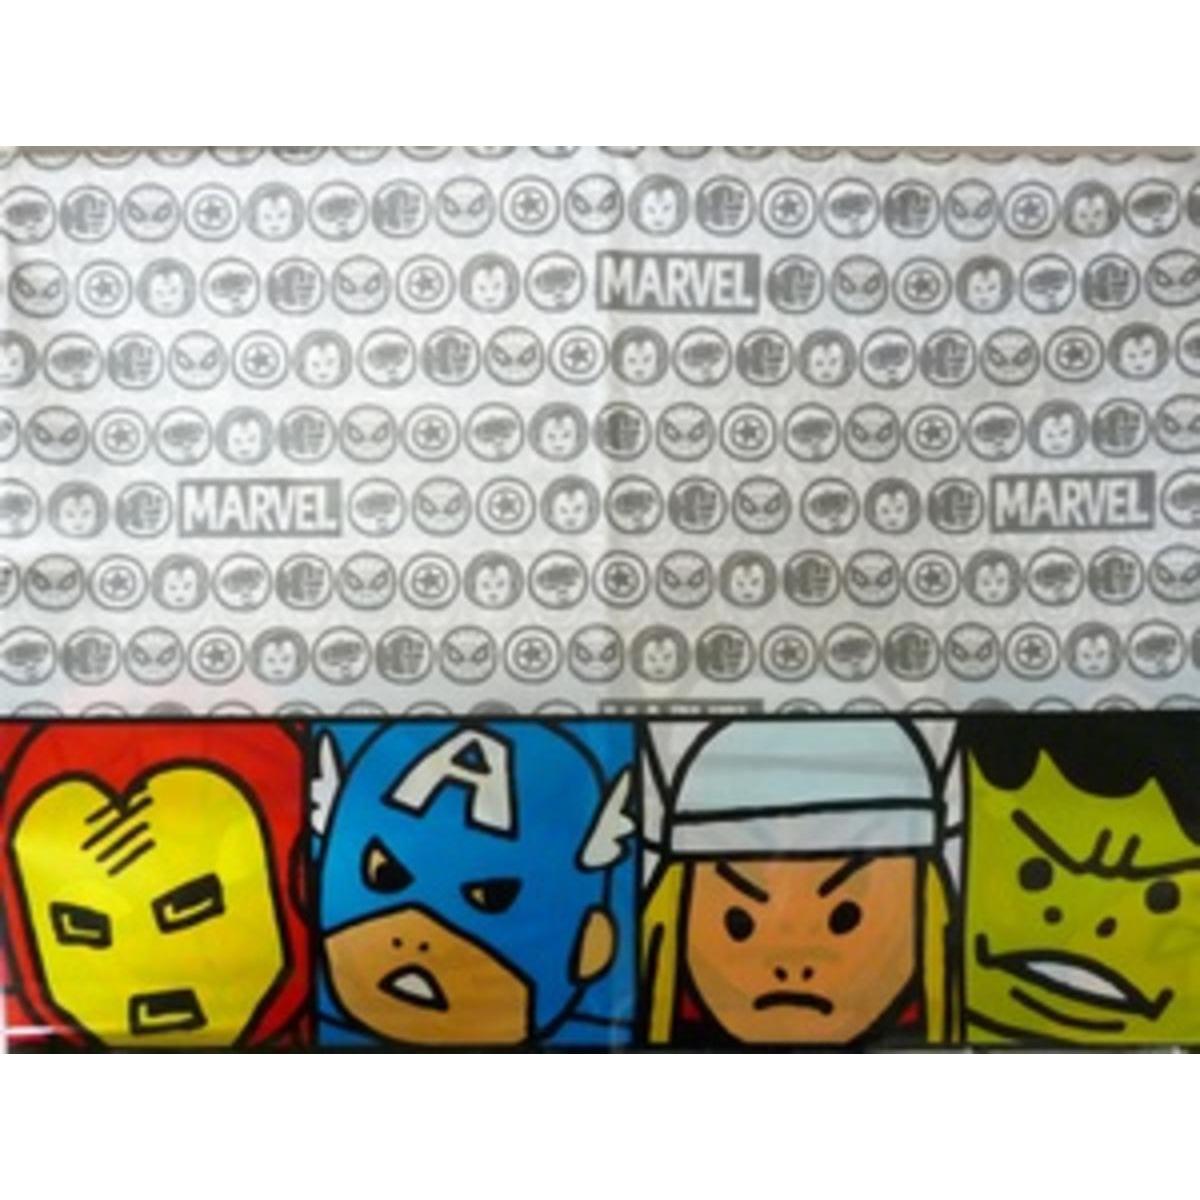 Avengers team power nap plastique 120 x 180 cm x 1 pièce m2